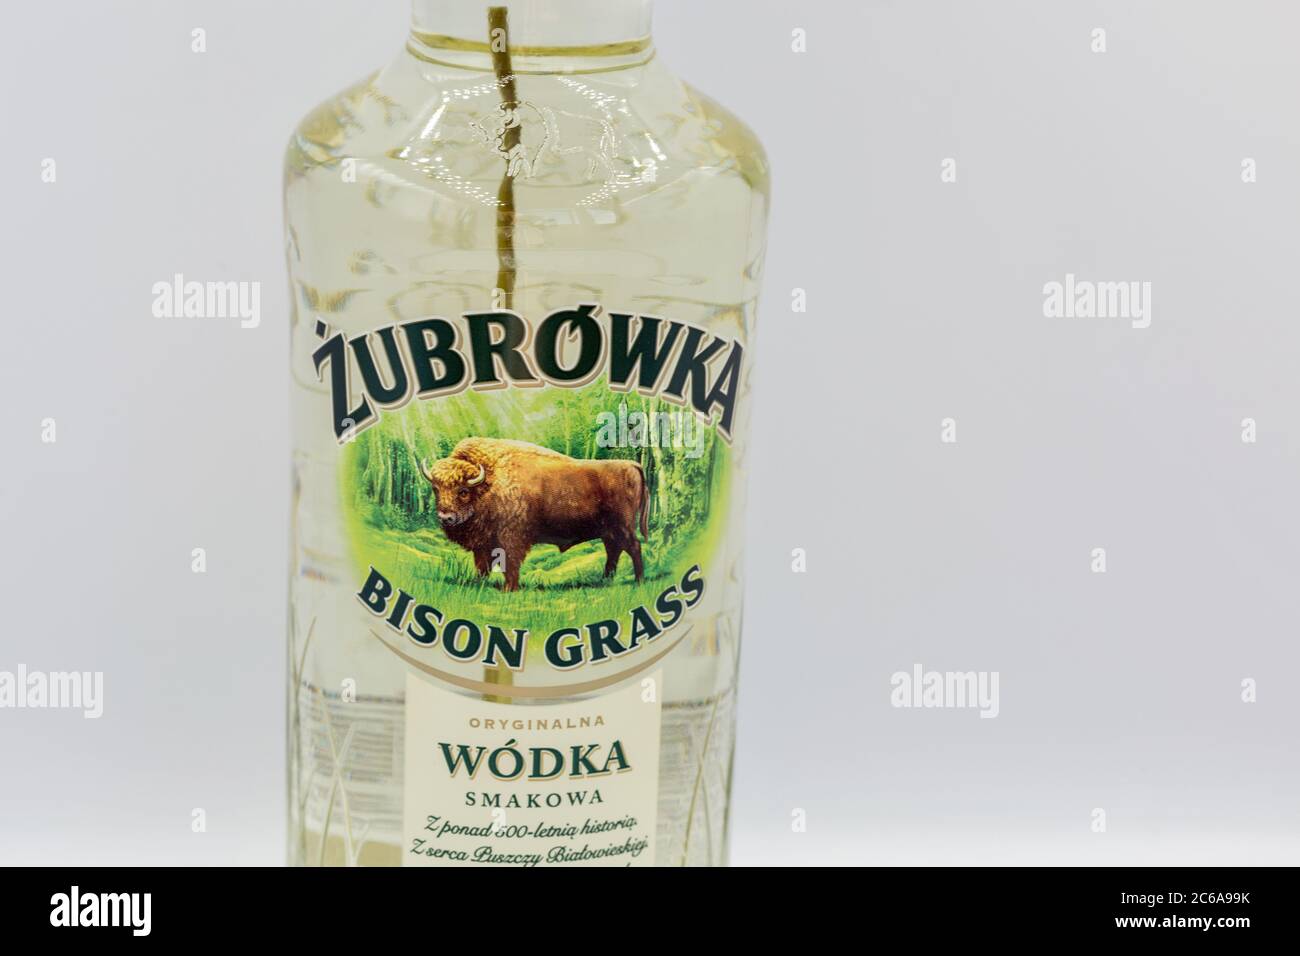 KIEW, UKRAINE - 06. JUNI 2020: Zubrowka Bison Grass Vodka Flasche Nahaufnahme vor weißem Hintergrund. Es ist ein aromatisierter polnischer Wodka Likör, der contai Stockfoto